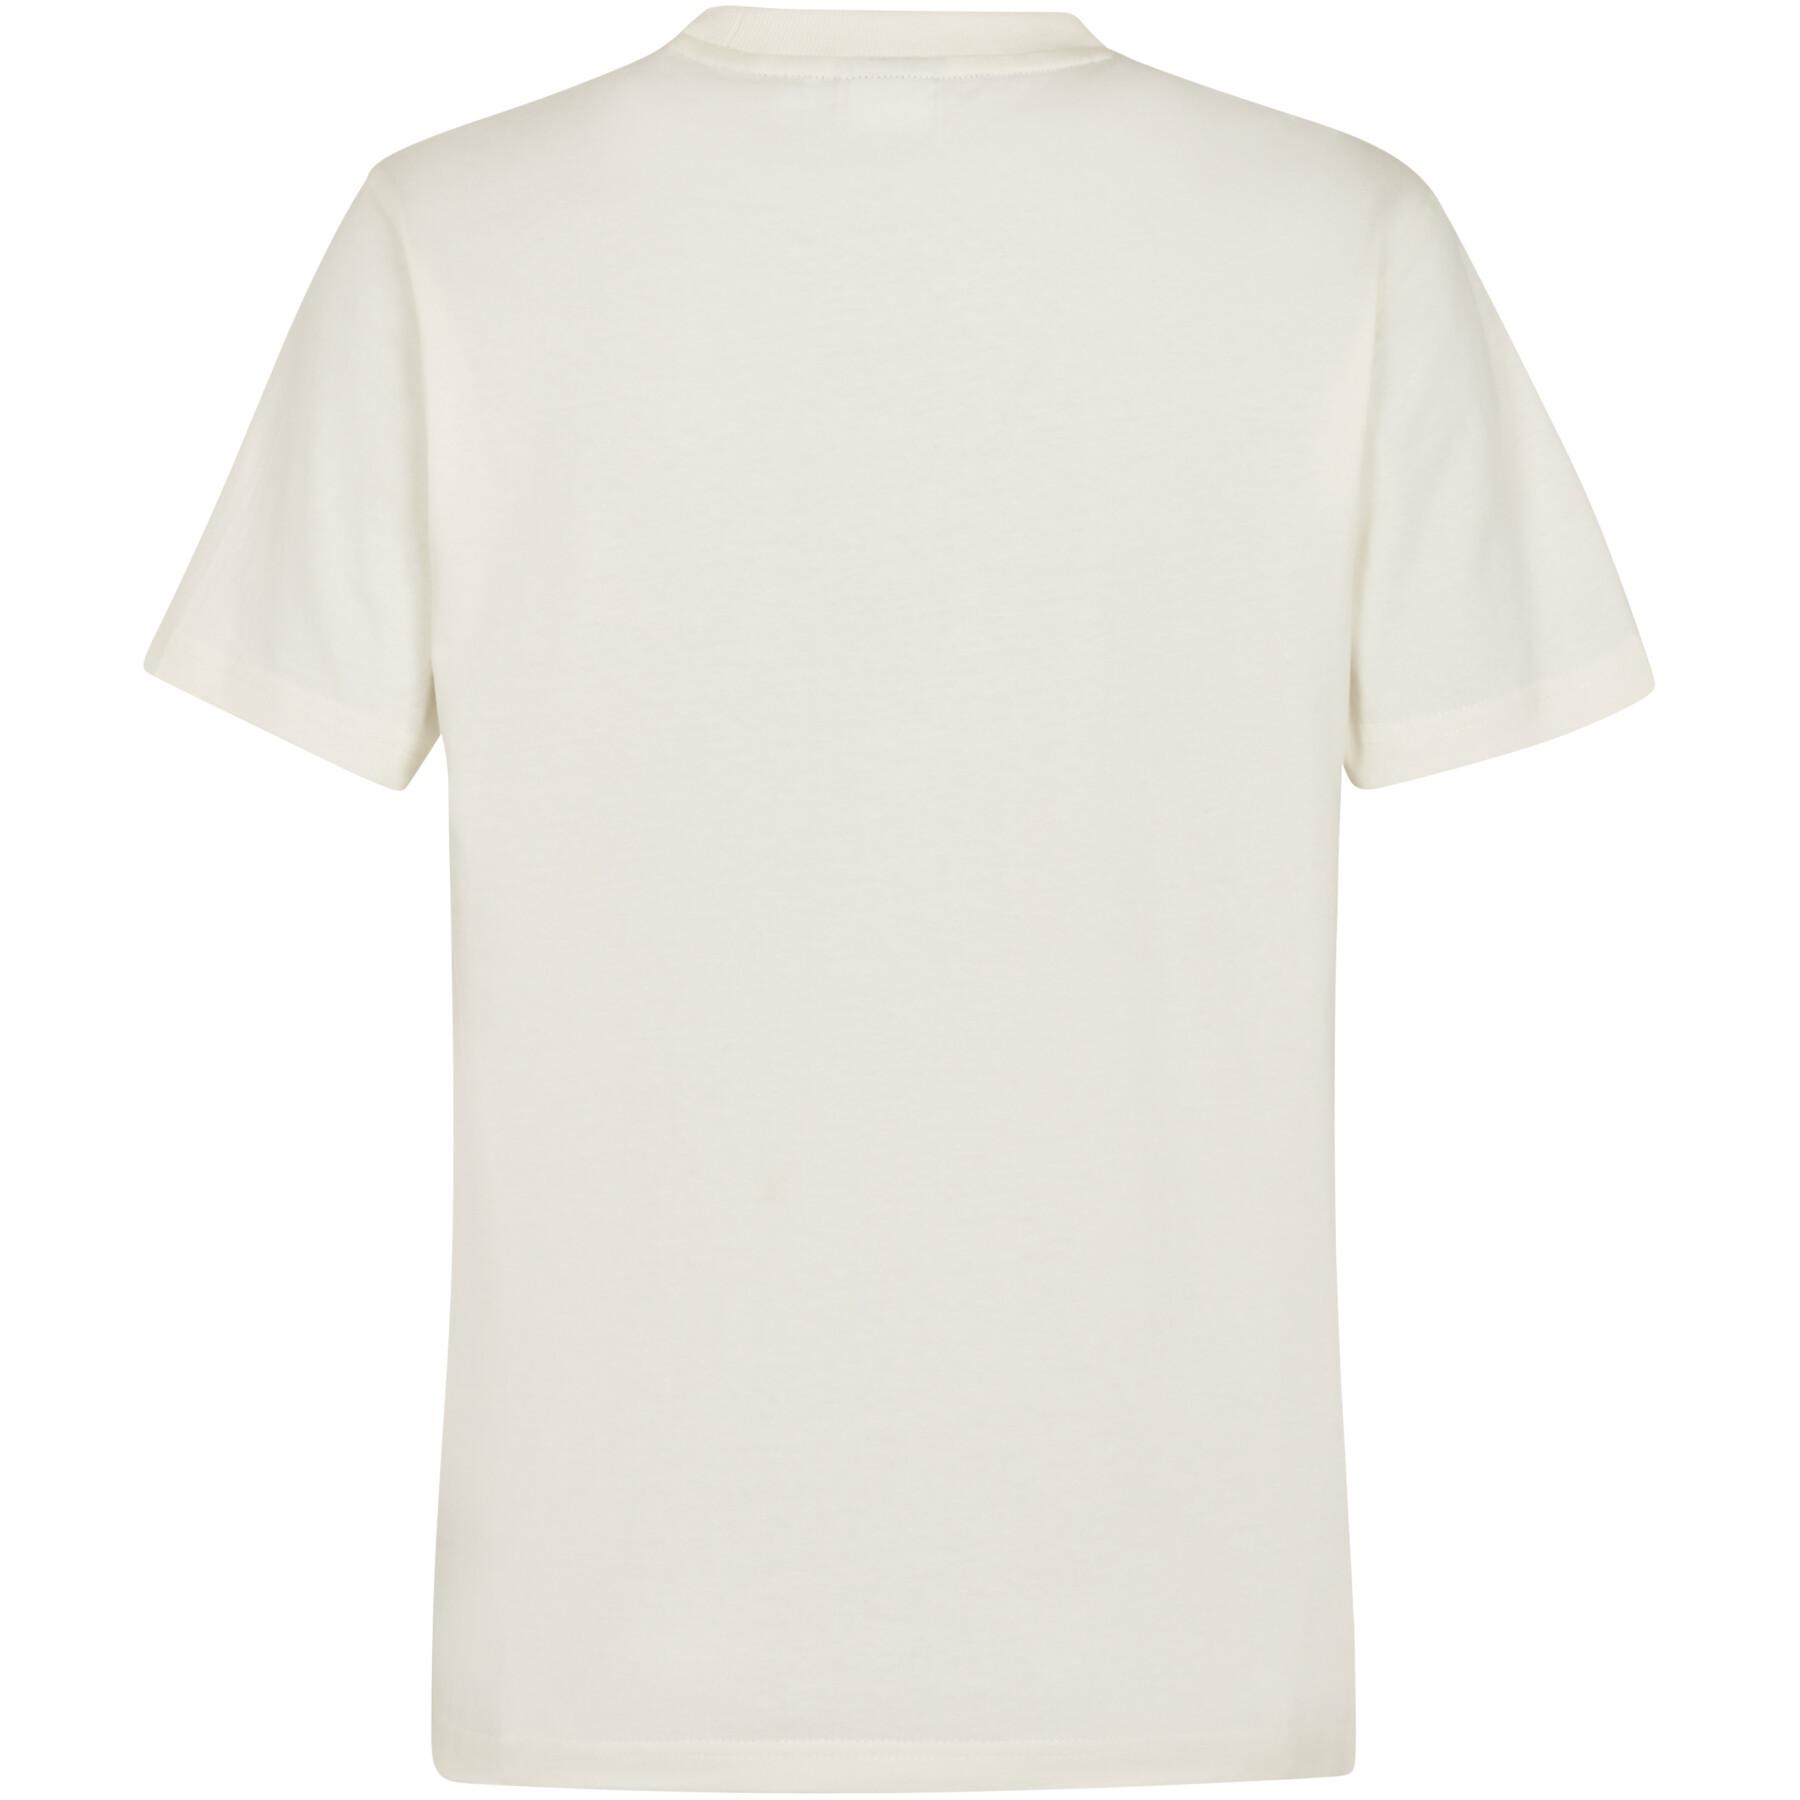 Women's T-shirt Fila Braila